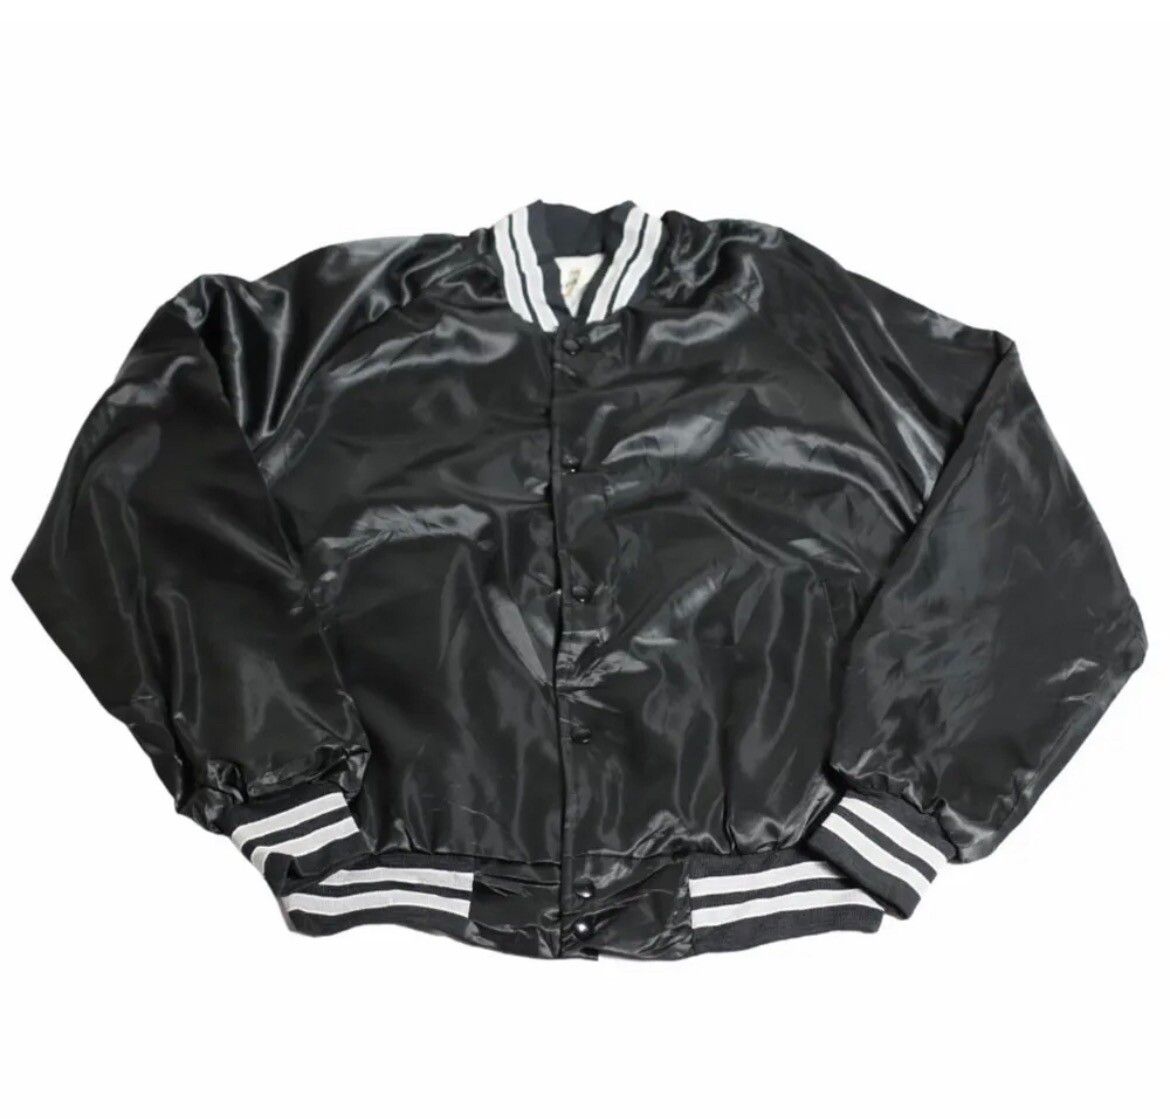 Vintage Black Varisty jacket Size US M / EU 48-50 / 2 - 1 Preview